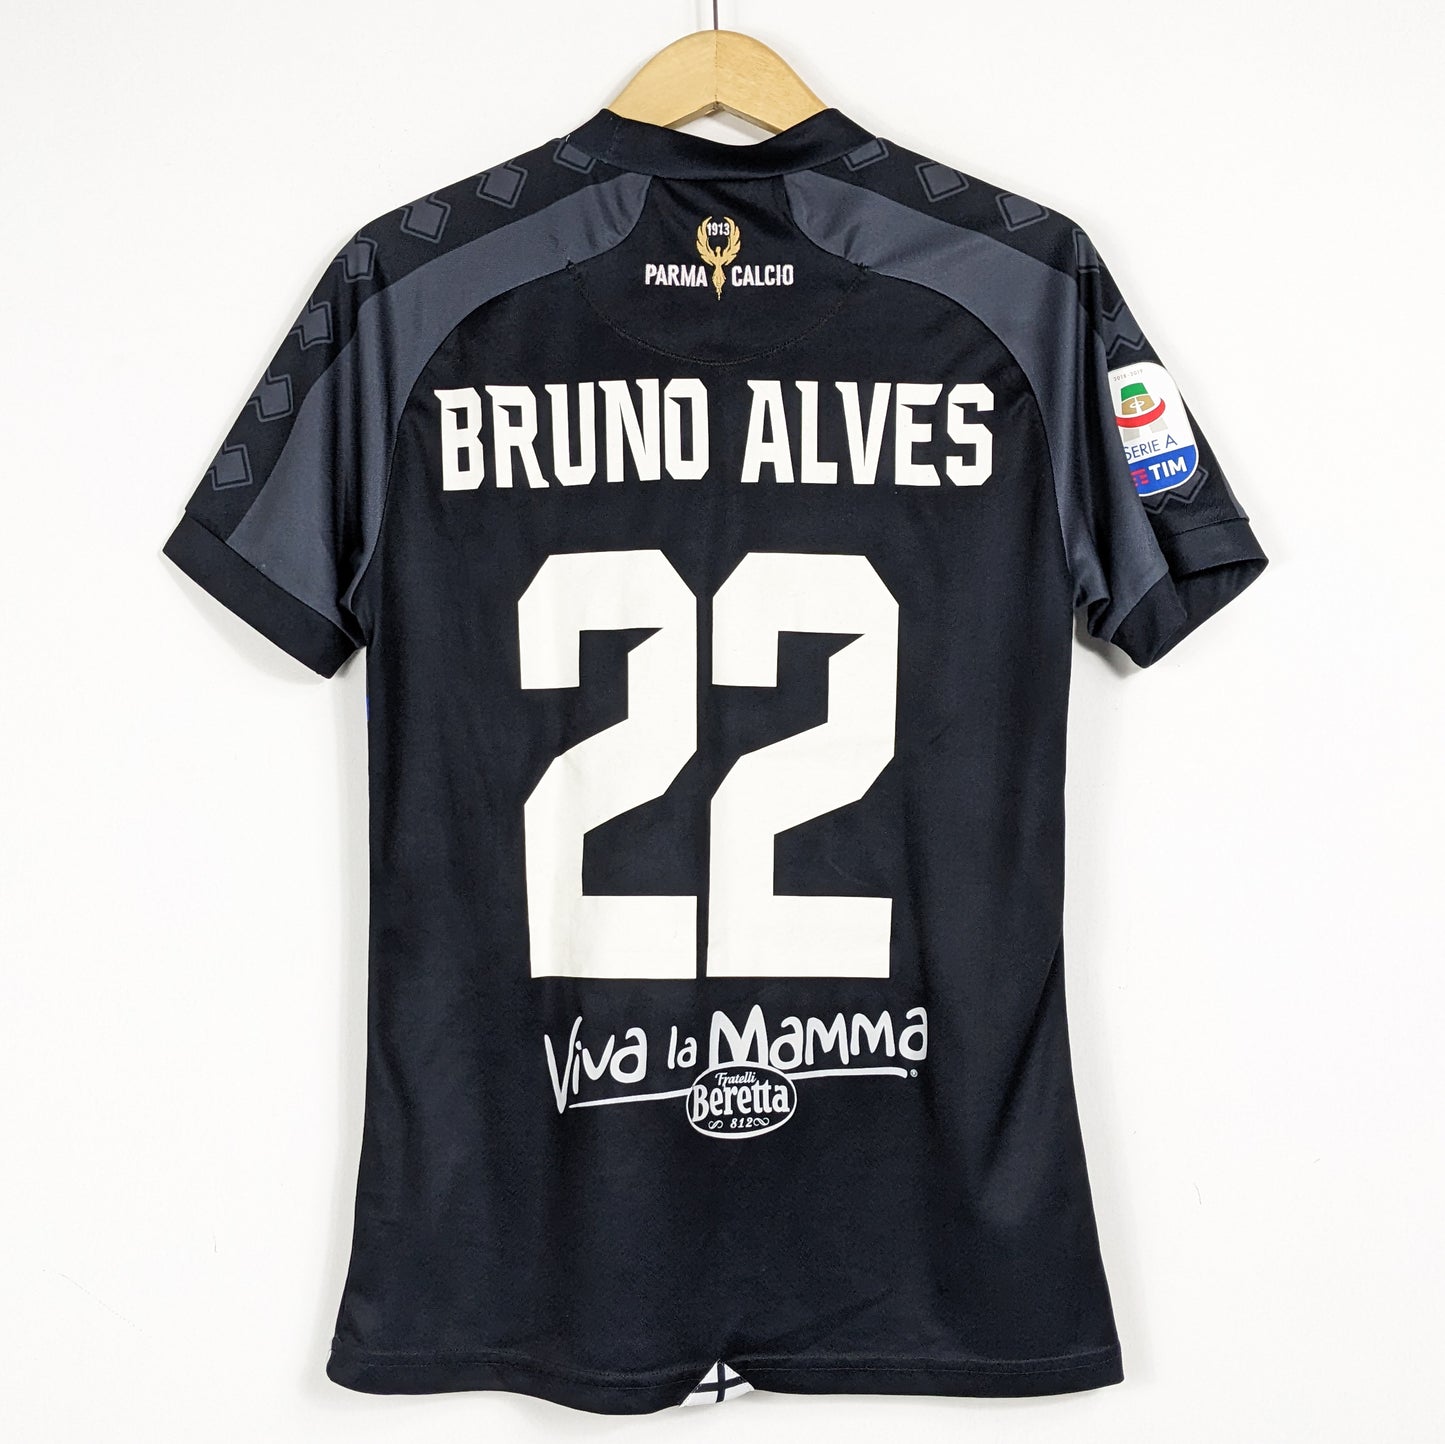 Authentic Parma 2018/2019 Third - Bruno Alves #22 Size M